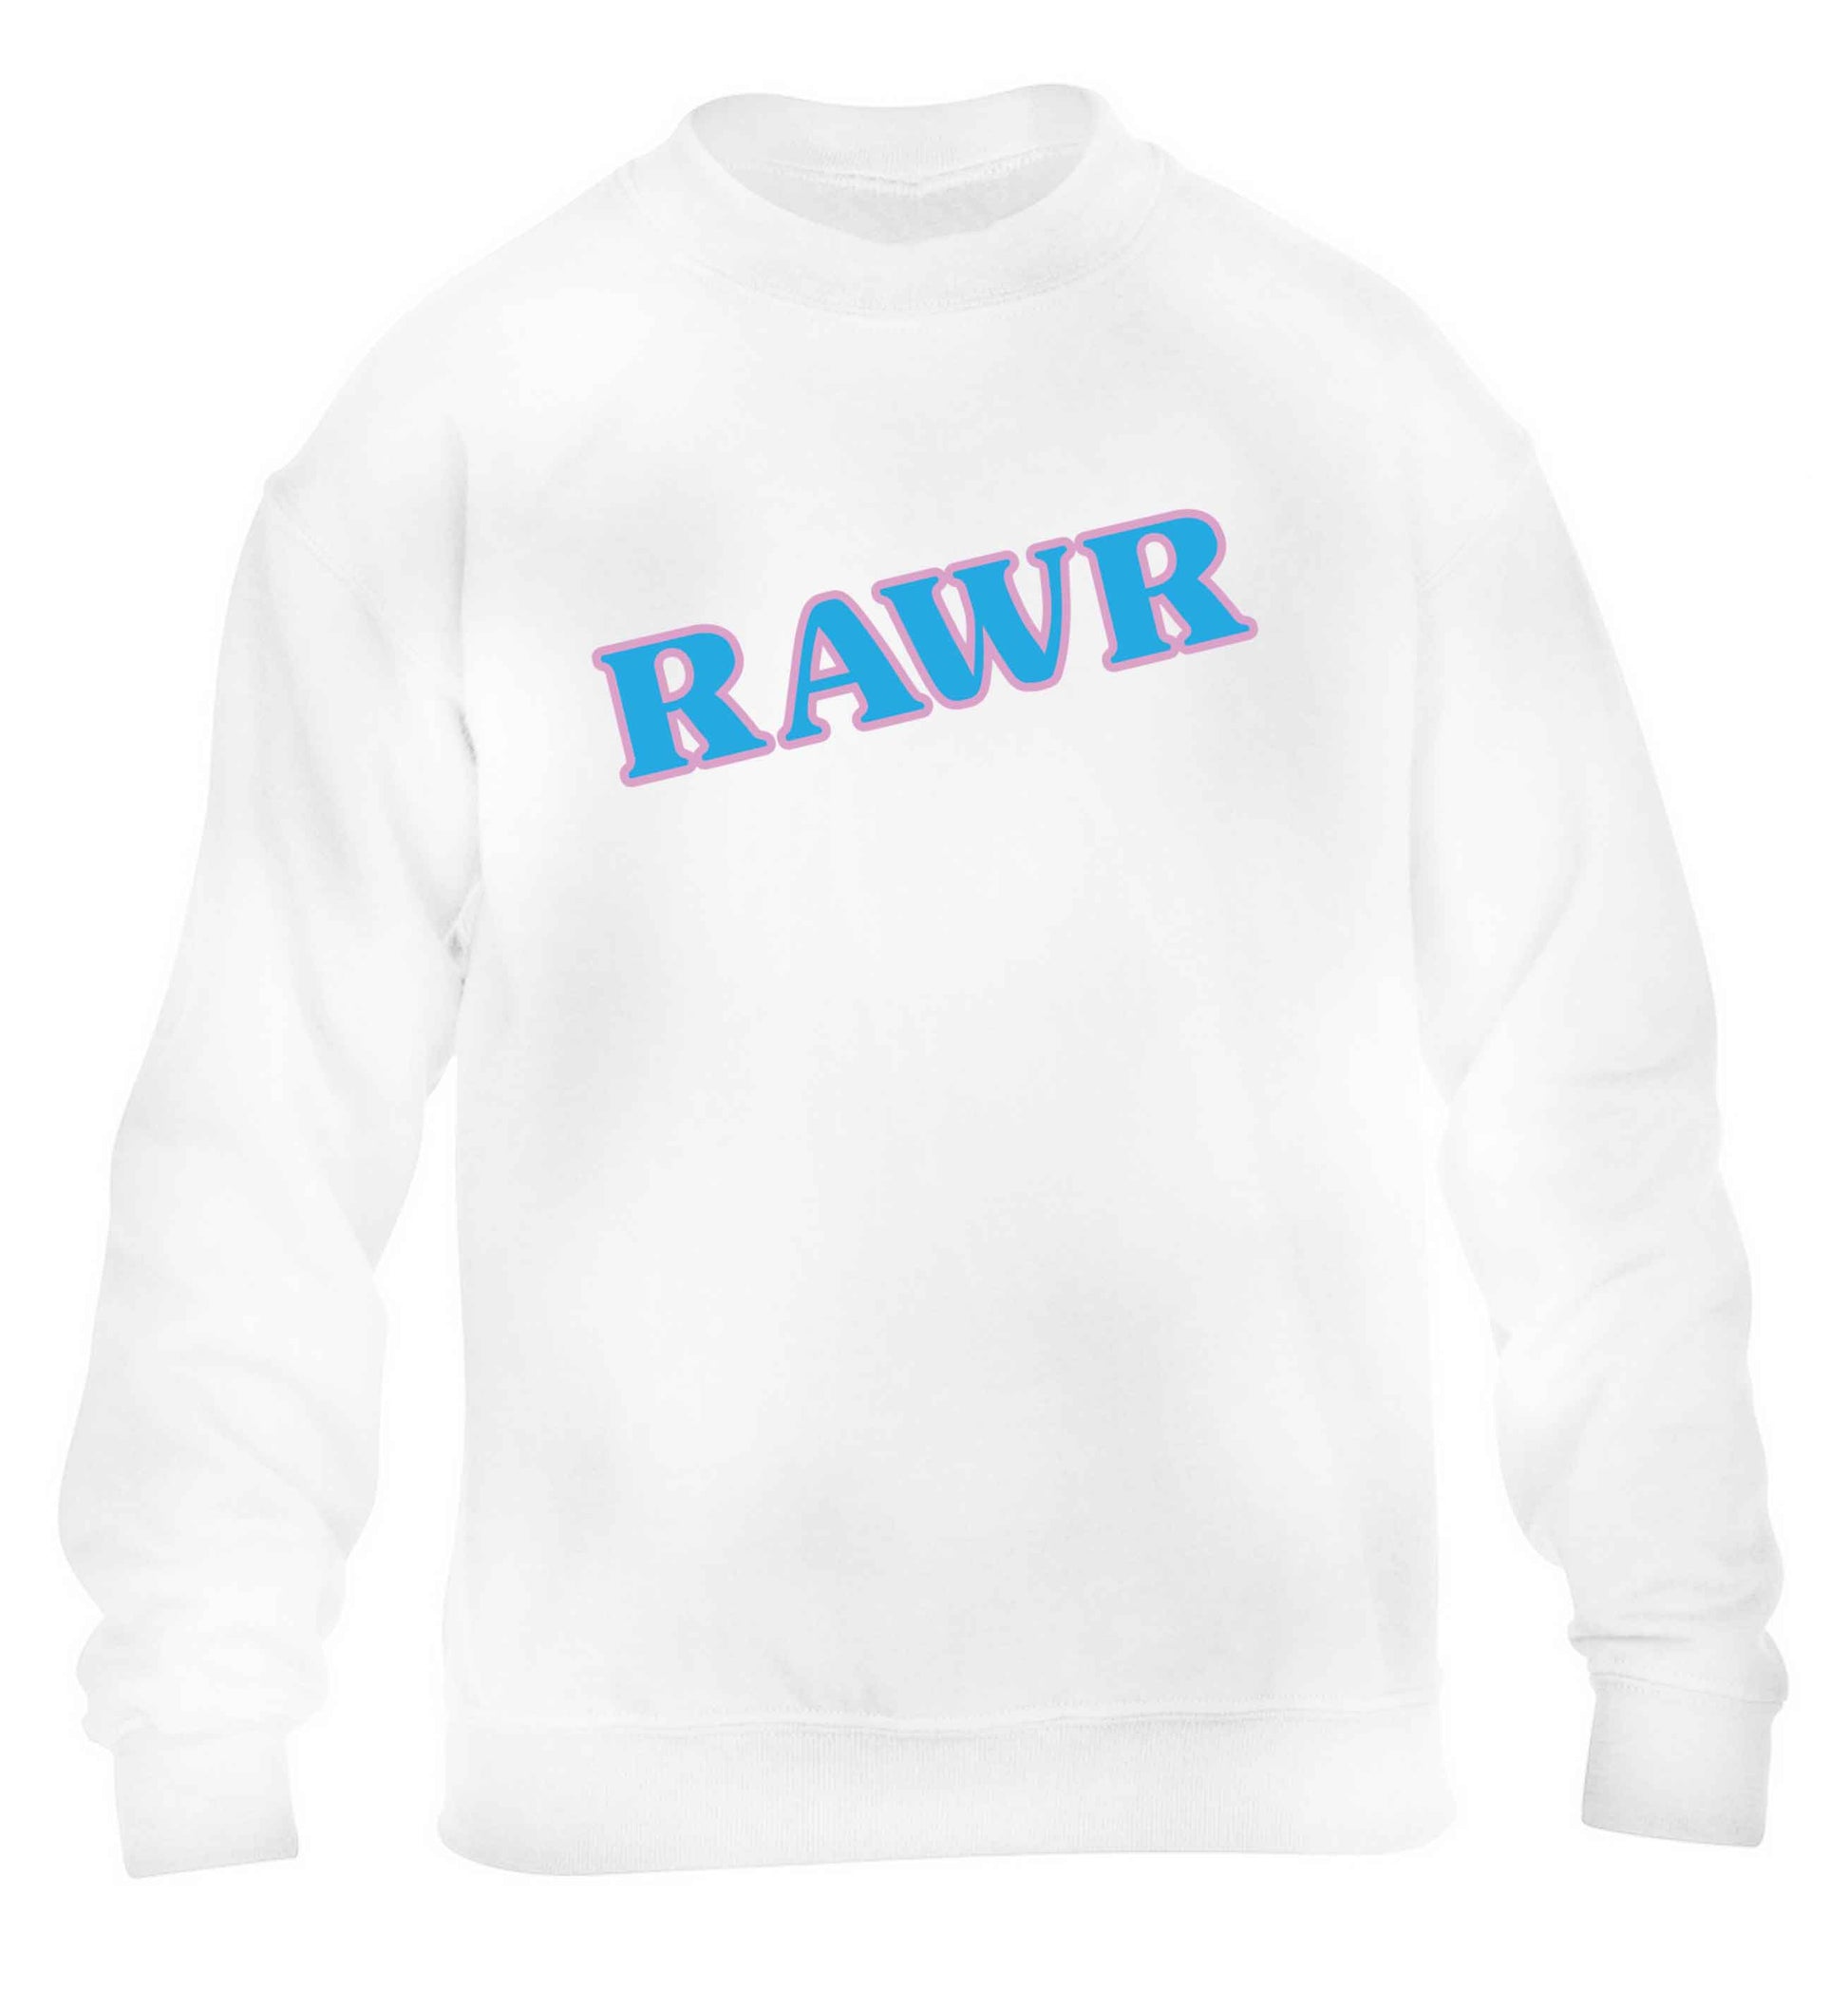 Rawr children's white sweater 12-13 Years